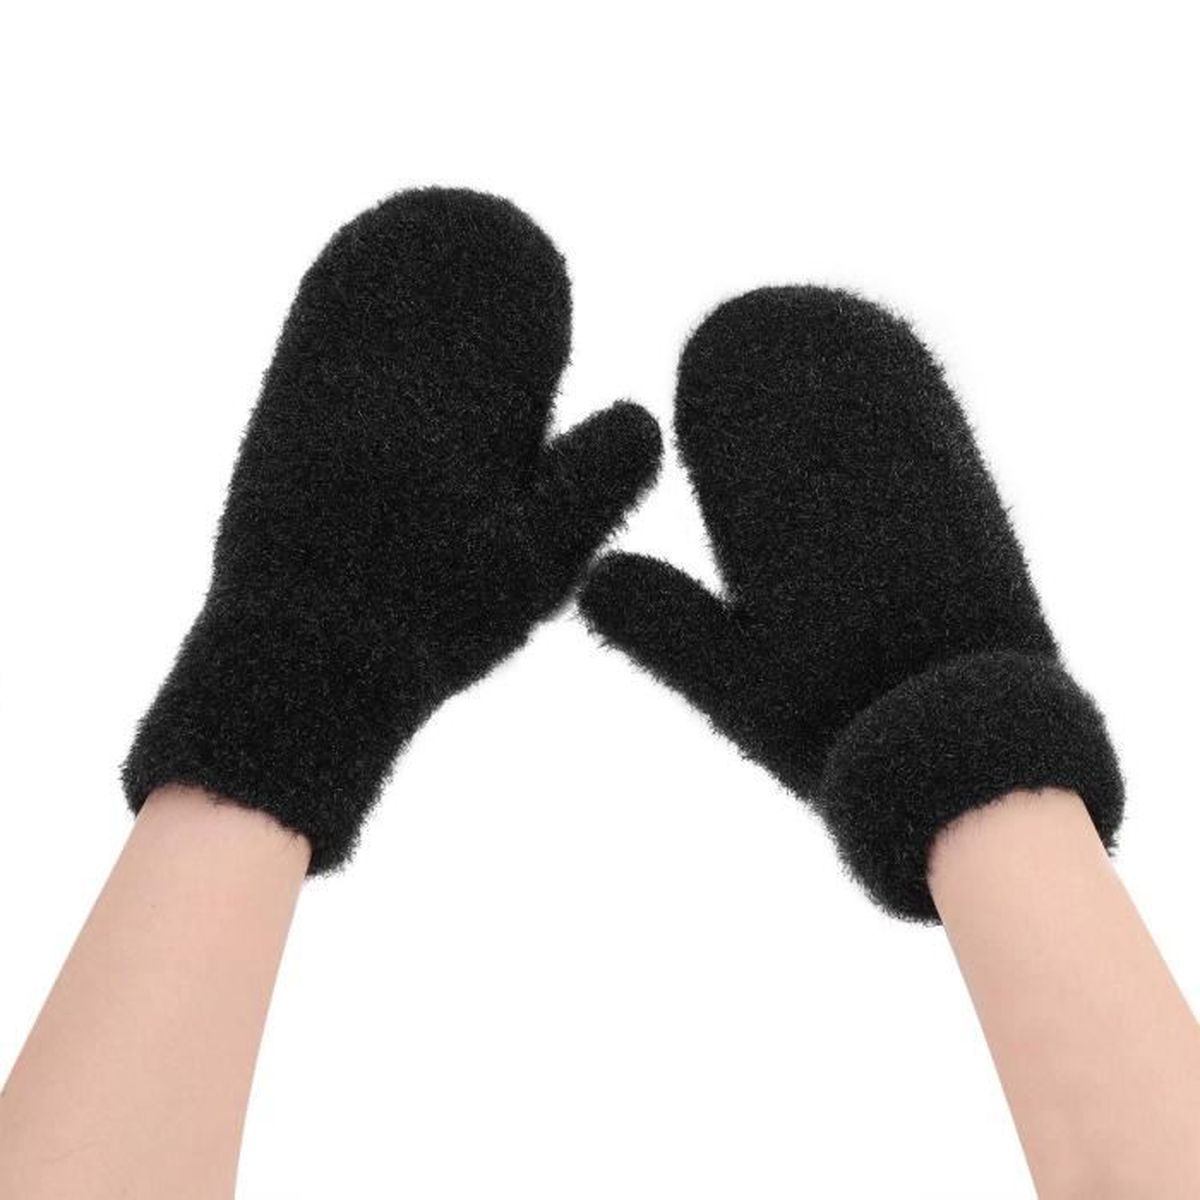 Moufles gants doublé polaire Taille unique homme femme  Noir ! 